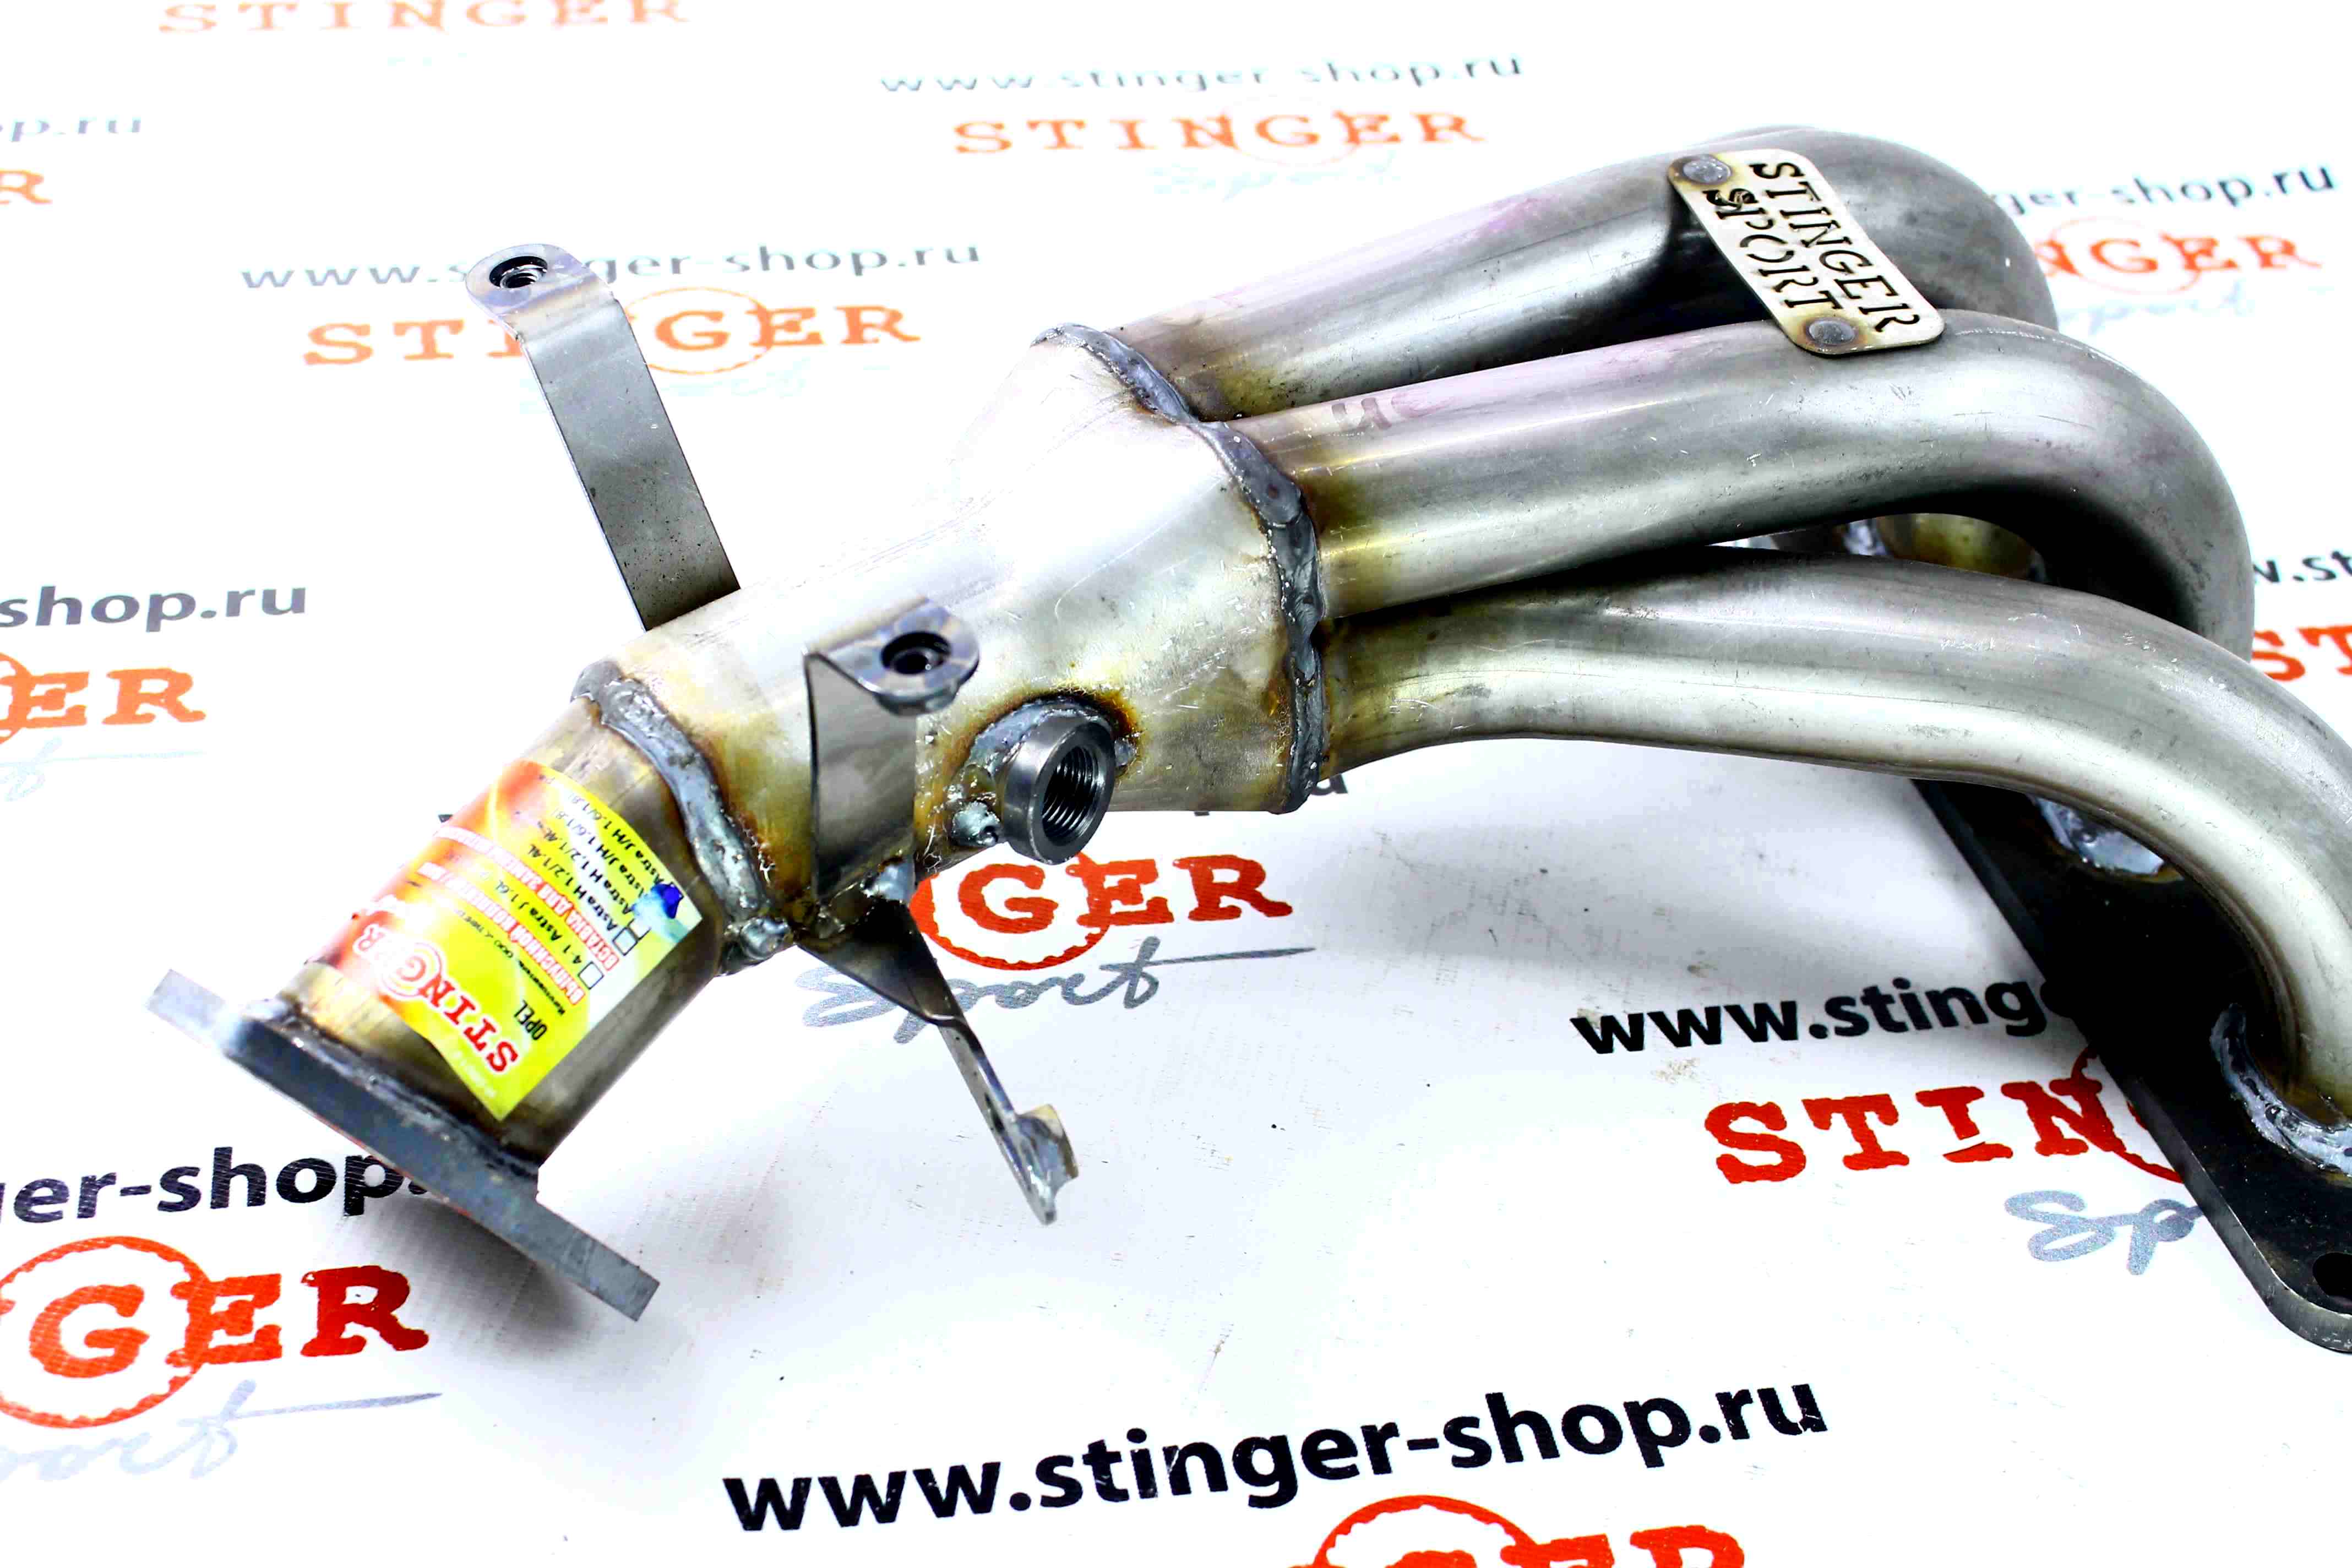 Вставка для замены катализатора 0850354/55572912 "Stinger Sport" для Opel Astra J/H 1.6/1.8L /Chevrolet Aveo T300 1.6L (2012-н.в.)  A16XER/A18XER/LDE1.6 (нержавеющая сталь). Фото �2